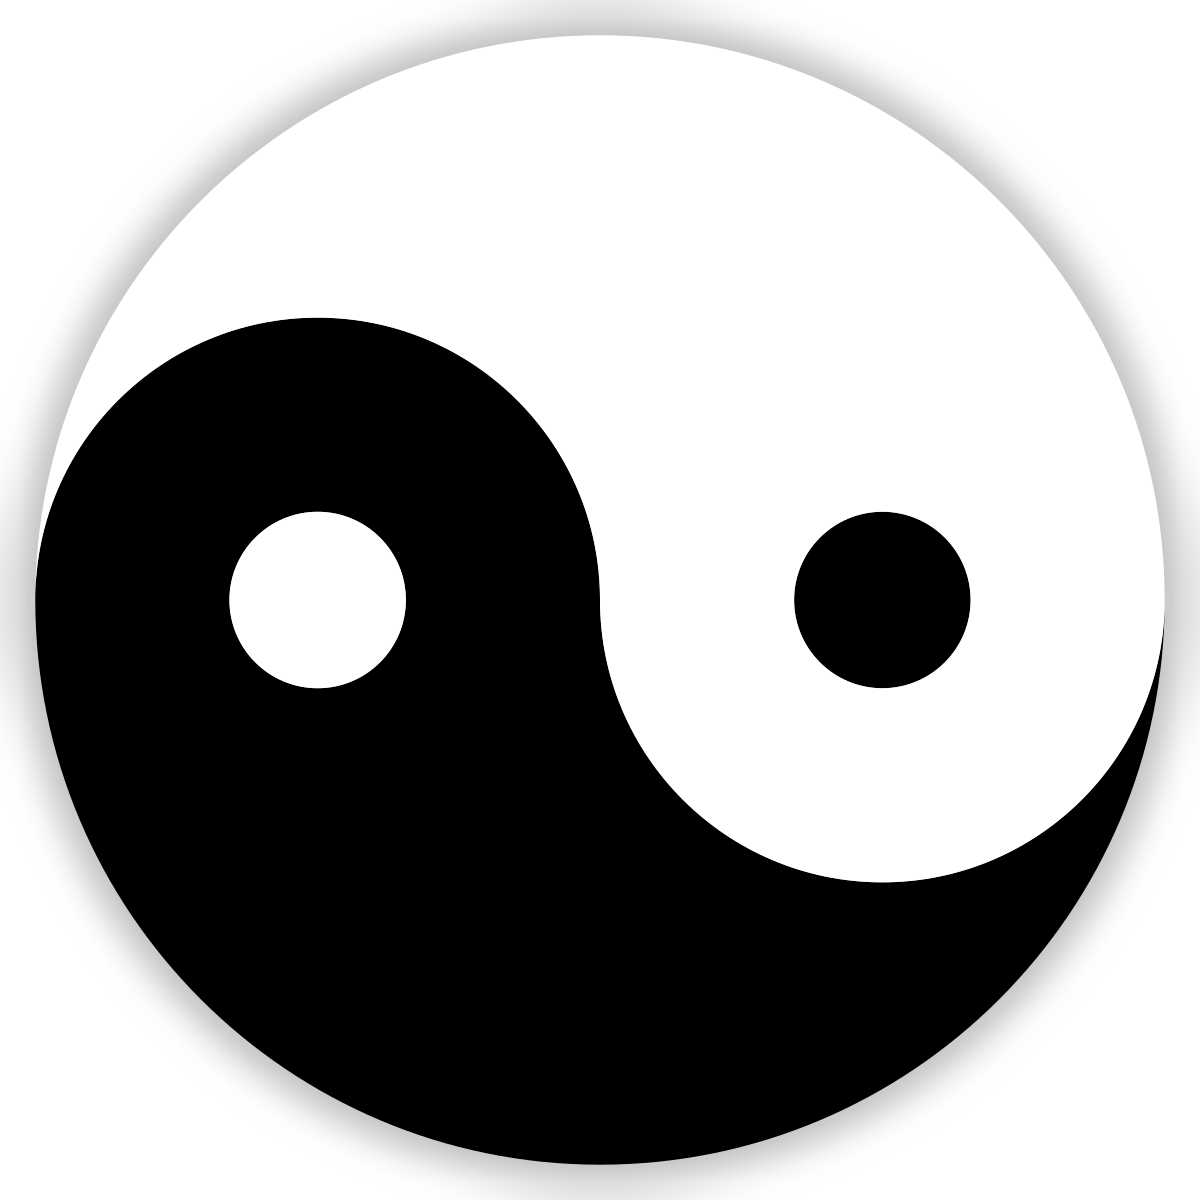 Download File:Yin Yang rotated.svg - Wikipedia